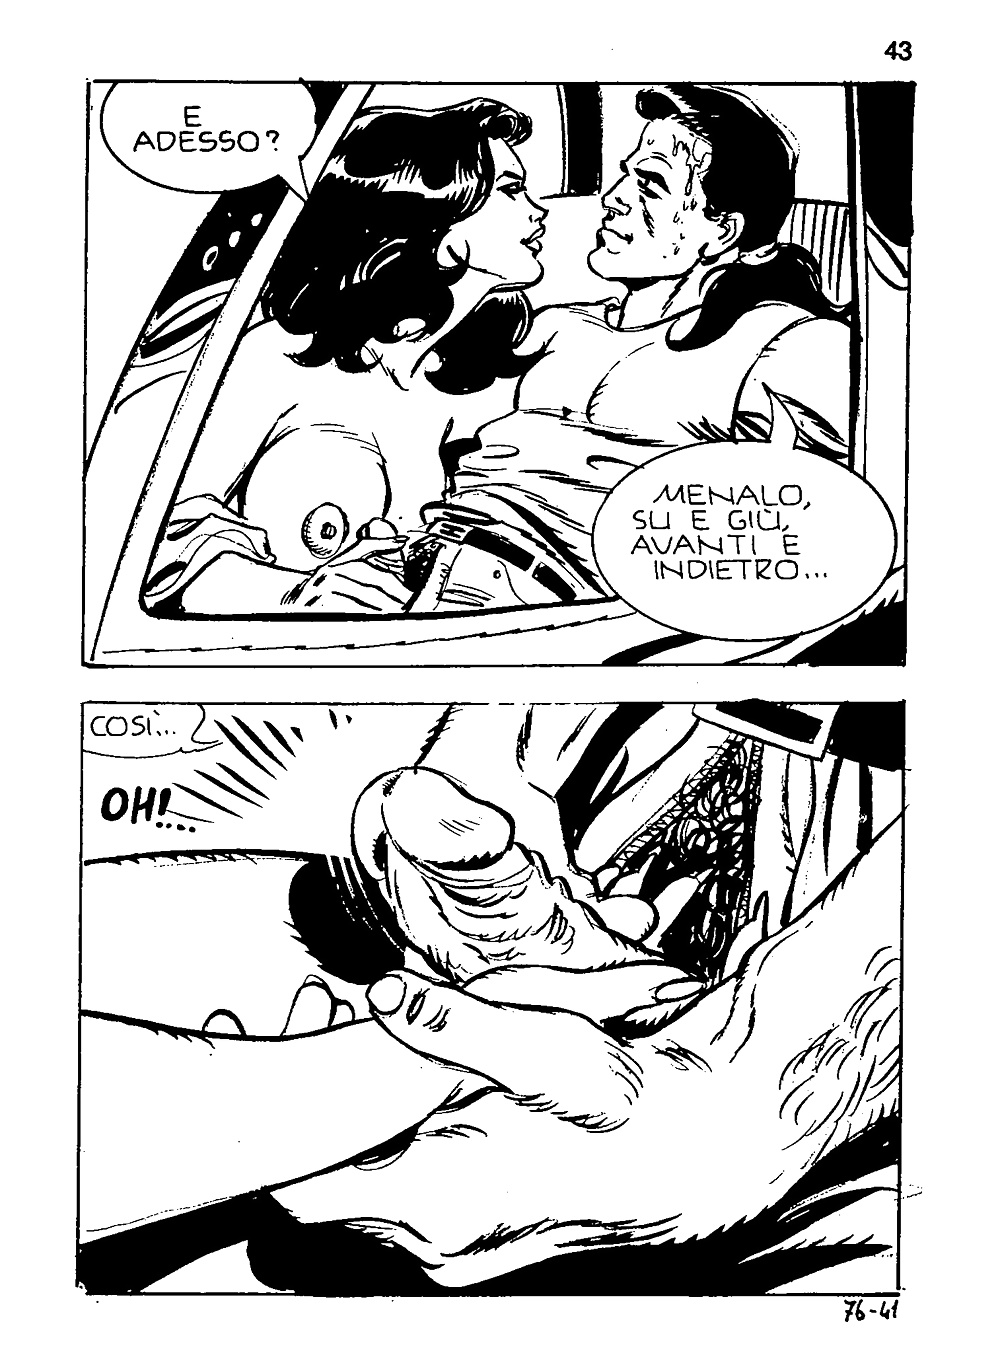 Old Italian Porno Comics - Vecchio fumetto porno italiano #39421270